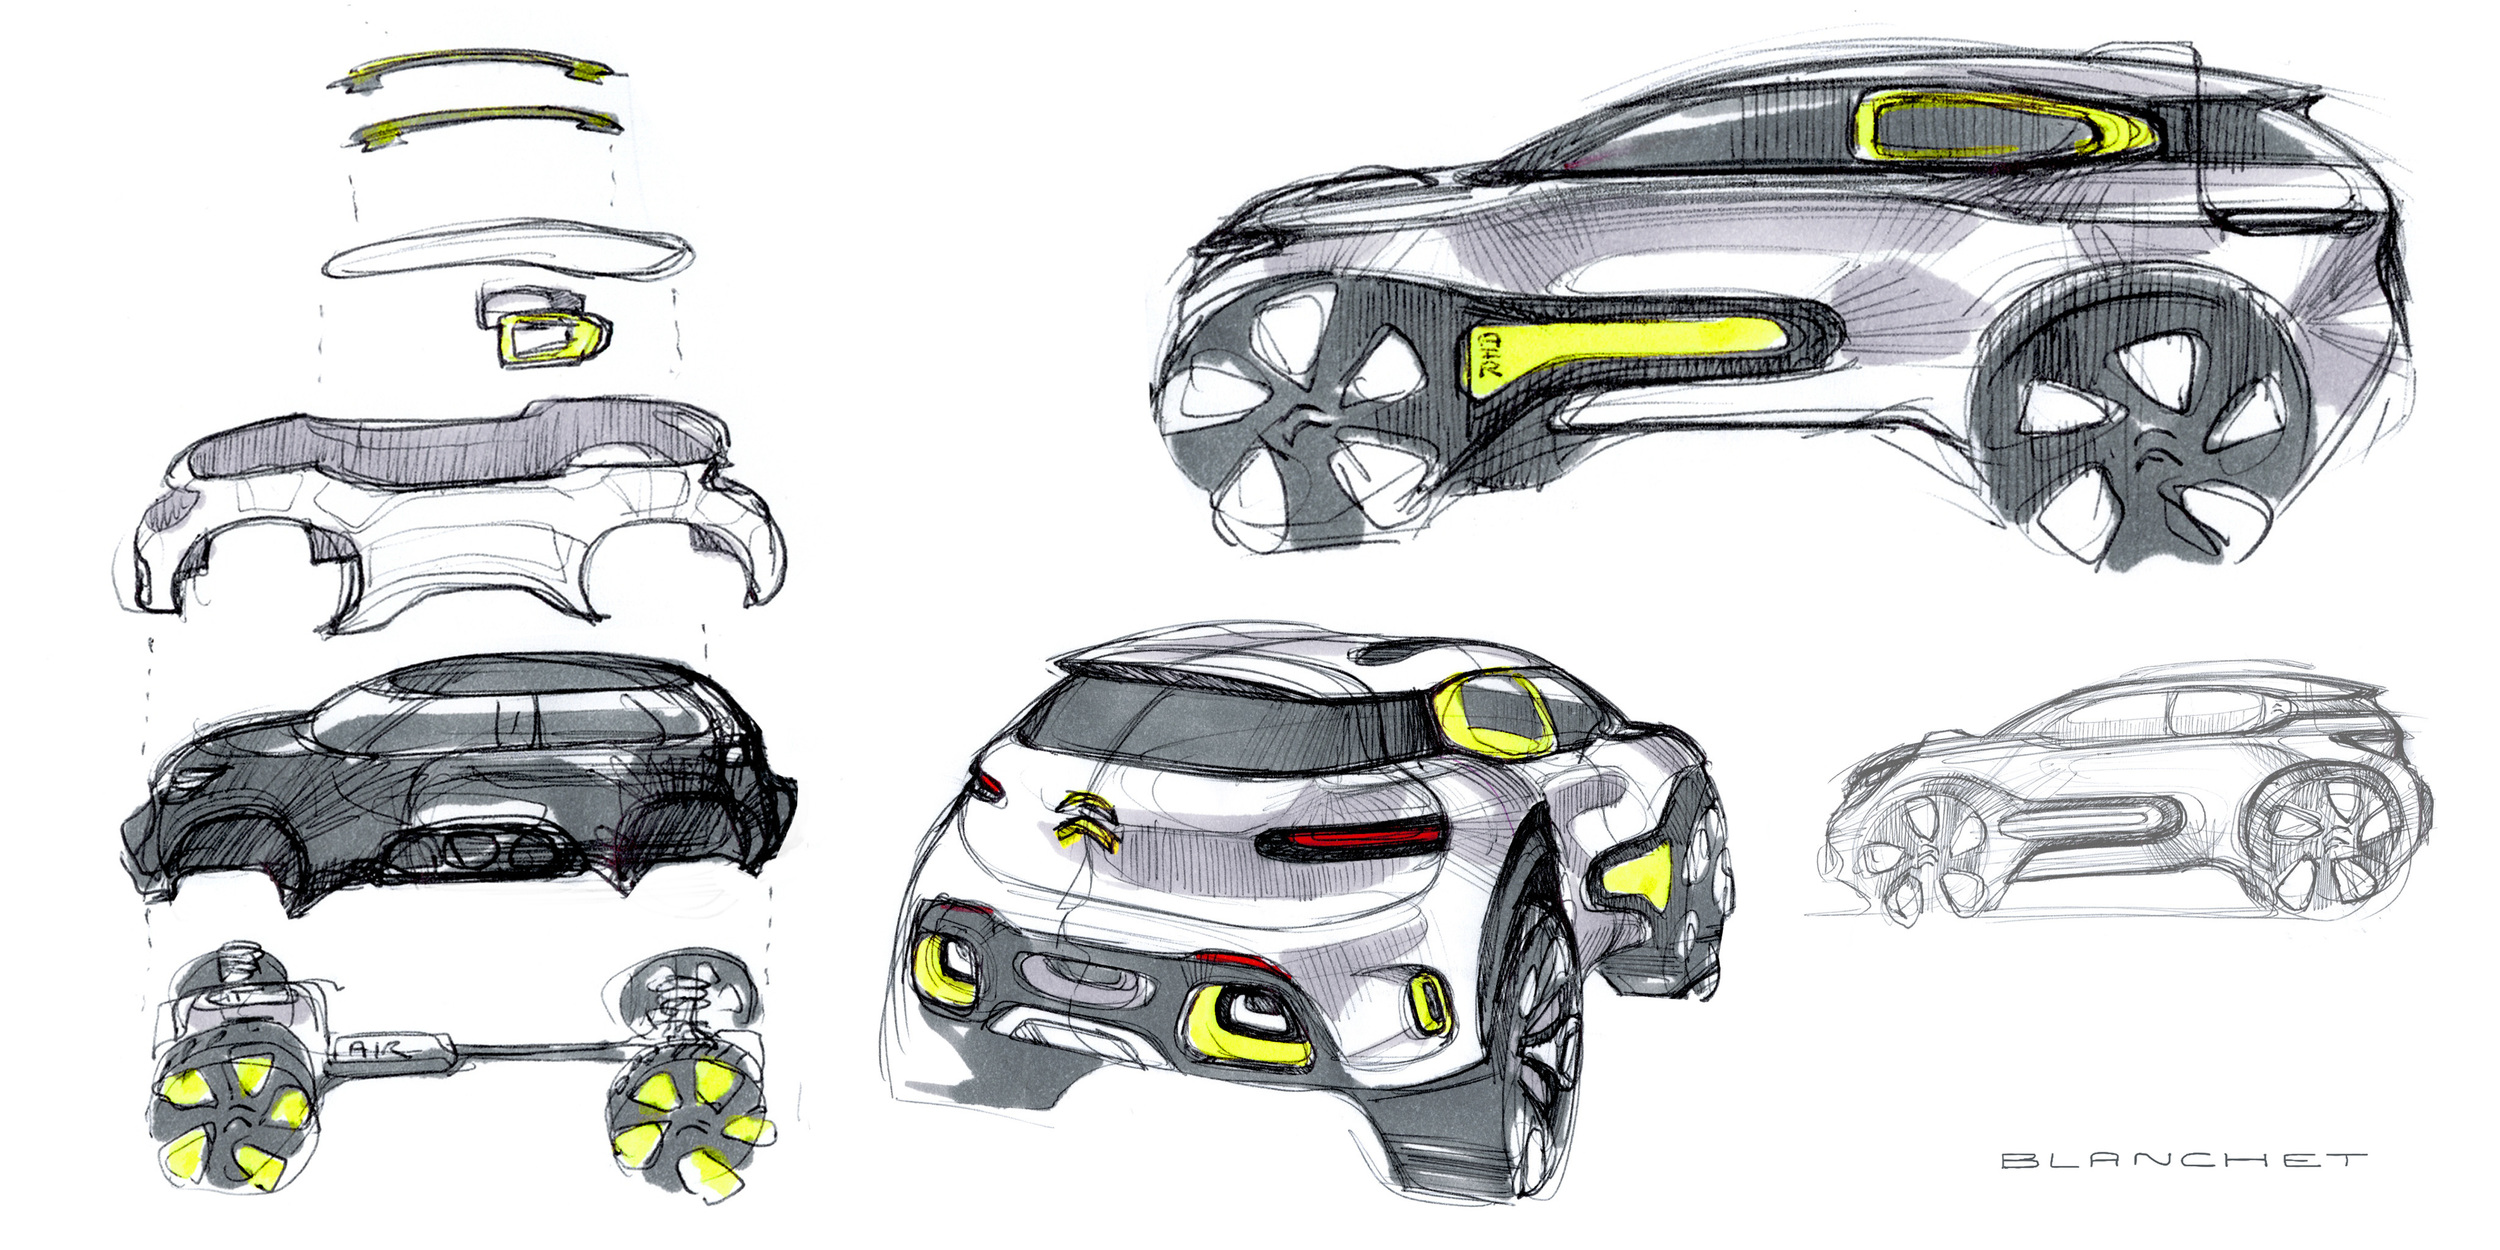 Citroen Aircross Concept, 2015 - Design Sketches